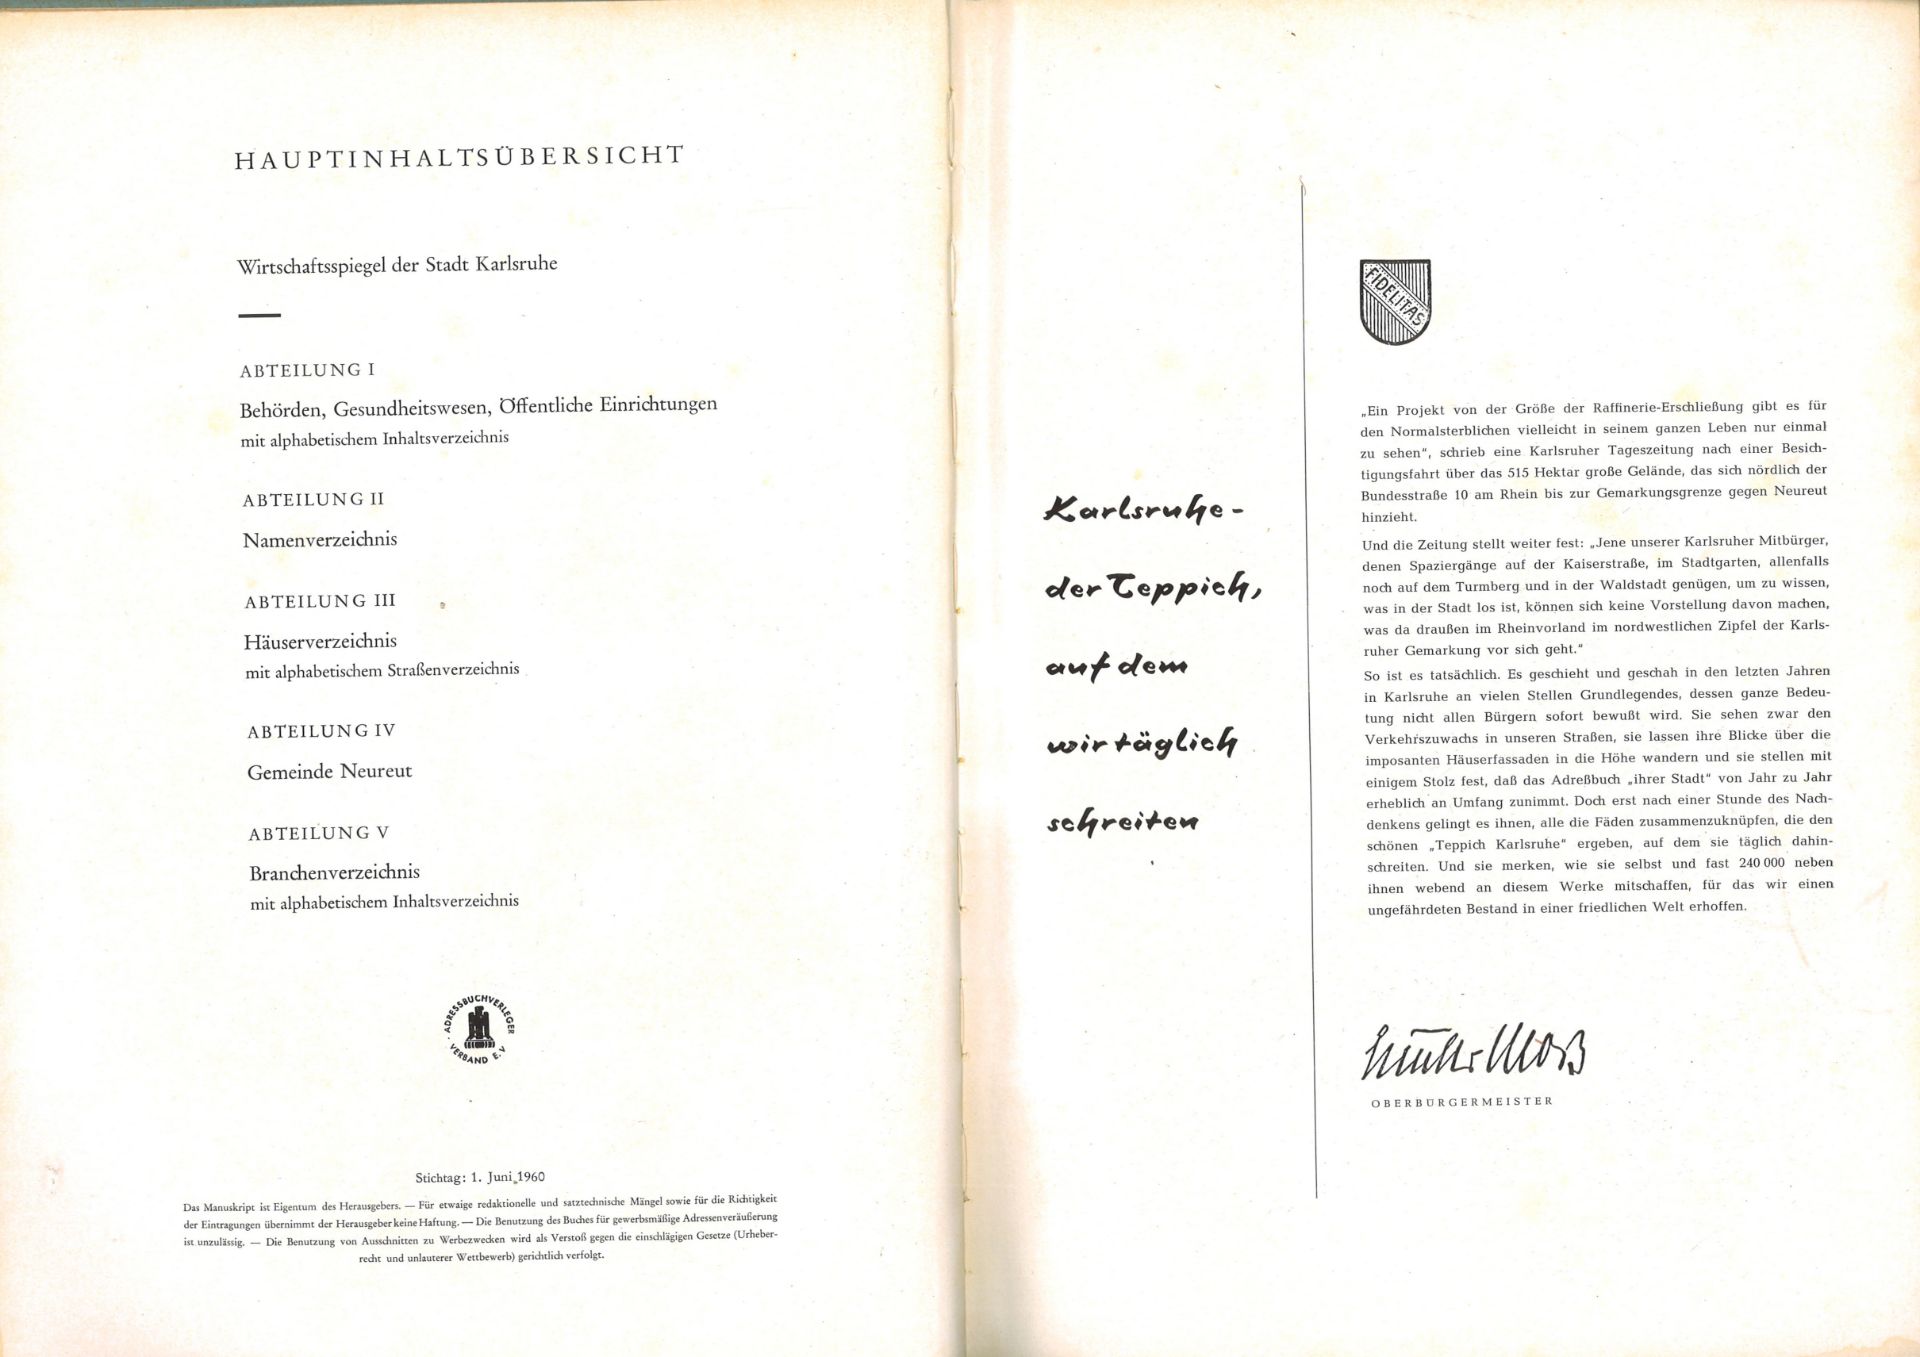 Adressbuch der Stadt Karlsruhe von 1961, vierundachtzigster Jahrgang, Adressbuchverlag G. Braun, - Image 2 of 2